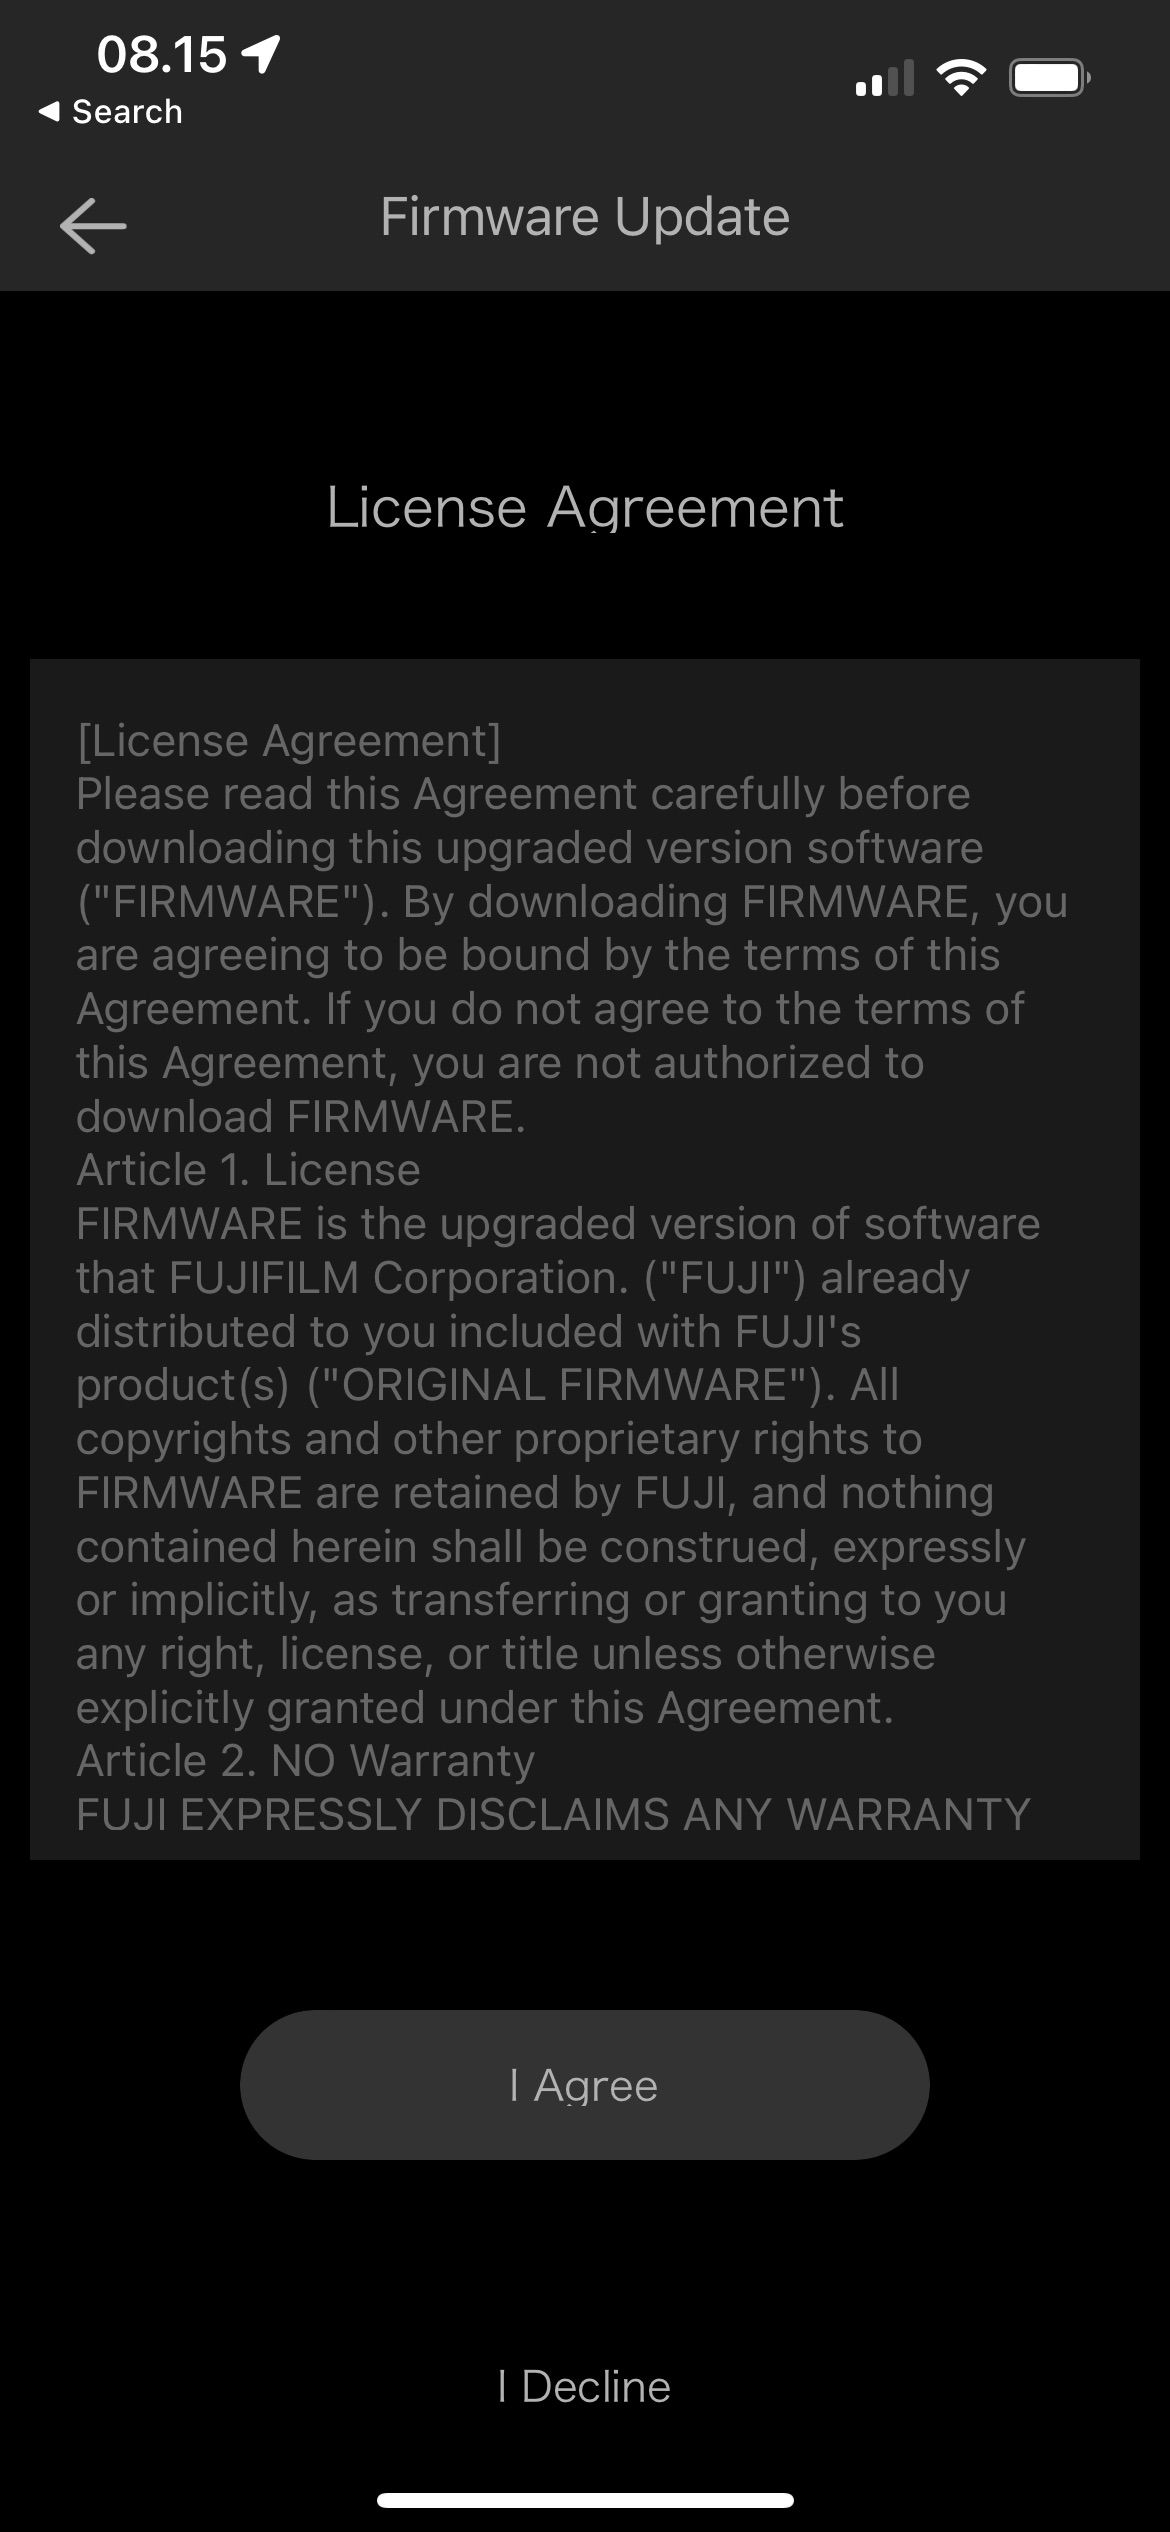 Fujifilm Licensing Agreement Screenshot